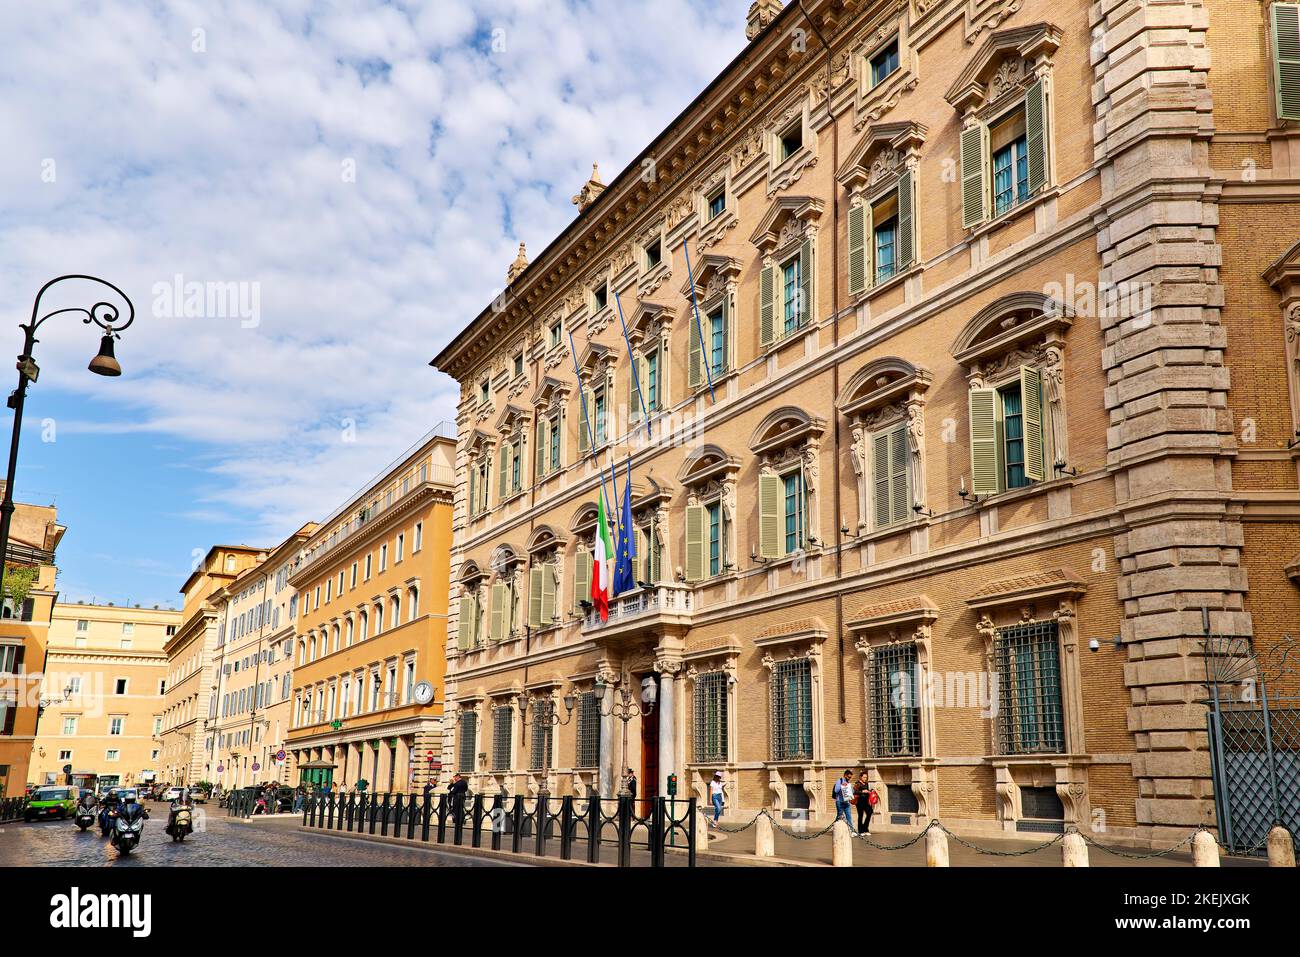 Roma Lazio Italia. El Palazzo Madama es la sede del Senado de la República Italiana, la cámara alta del Parlamento italiano. Foto de stock